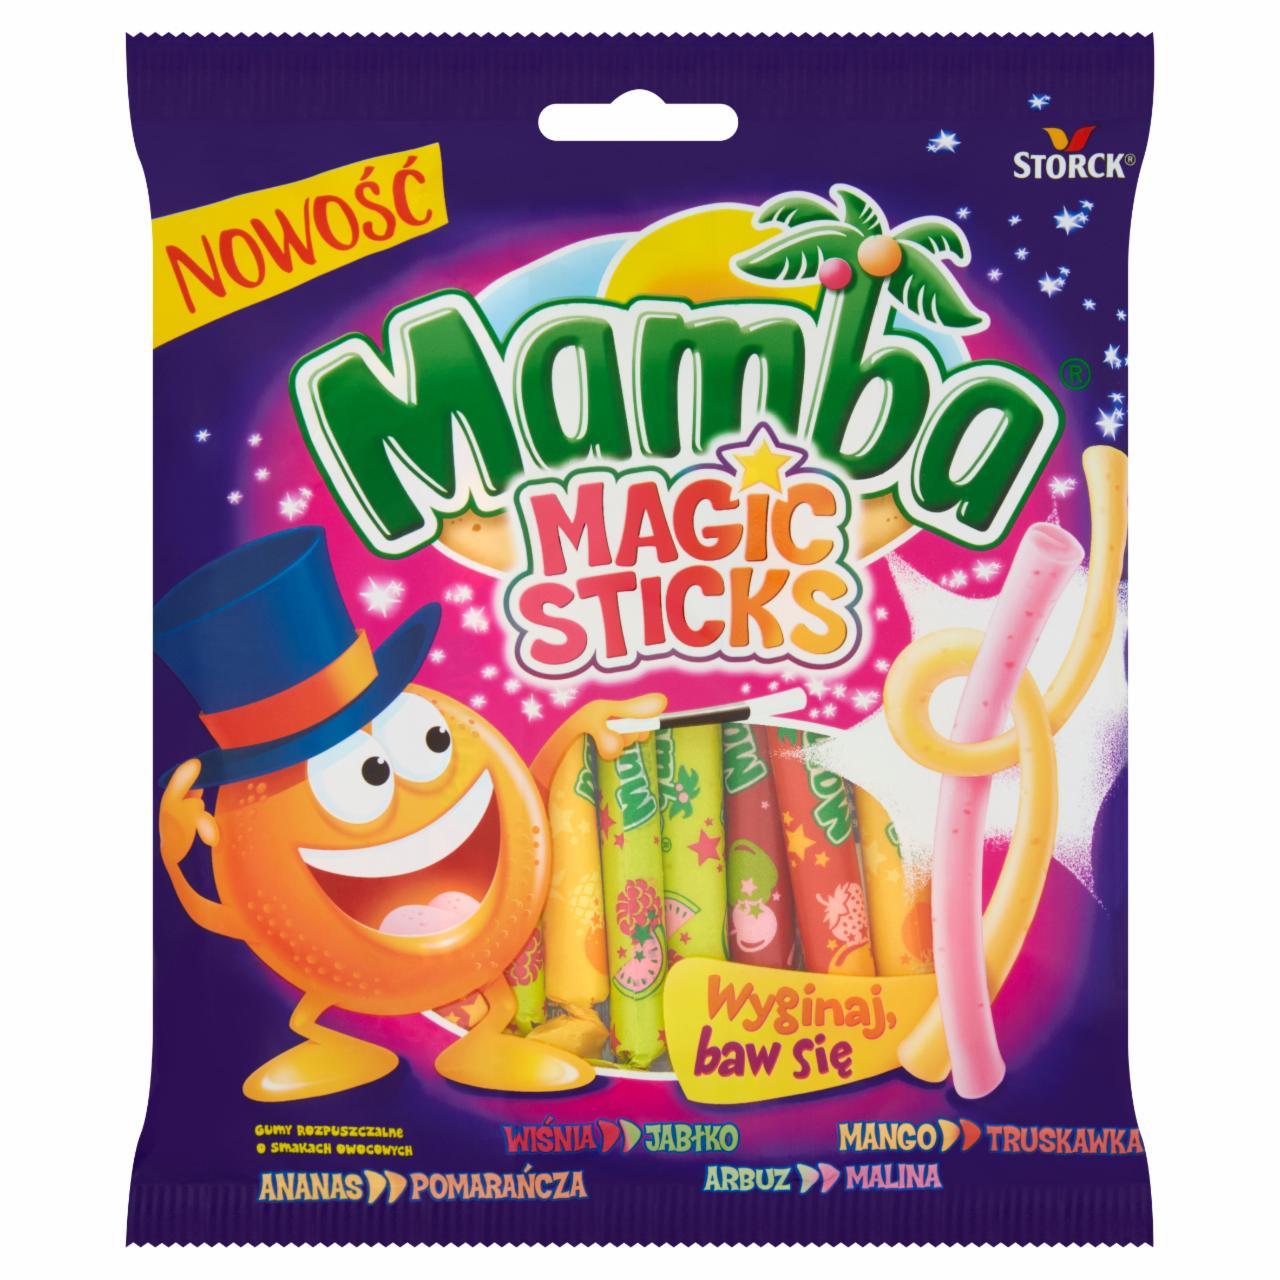 Zdjęcia - Mamba Magic Sticks Gumy rozpuszczalne o smakach owocowych 150 g